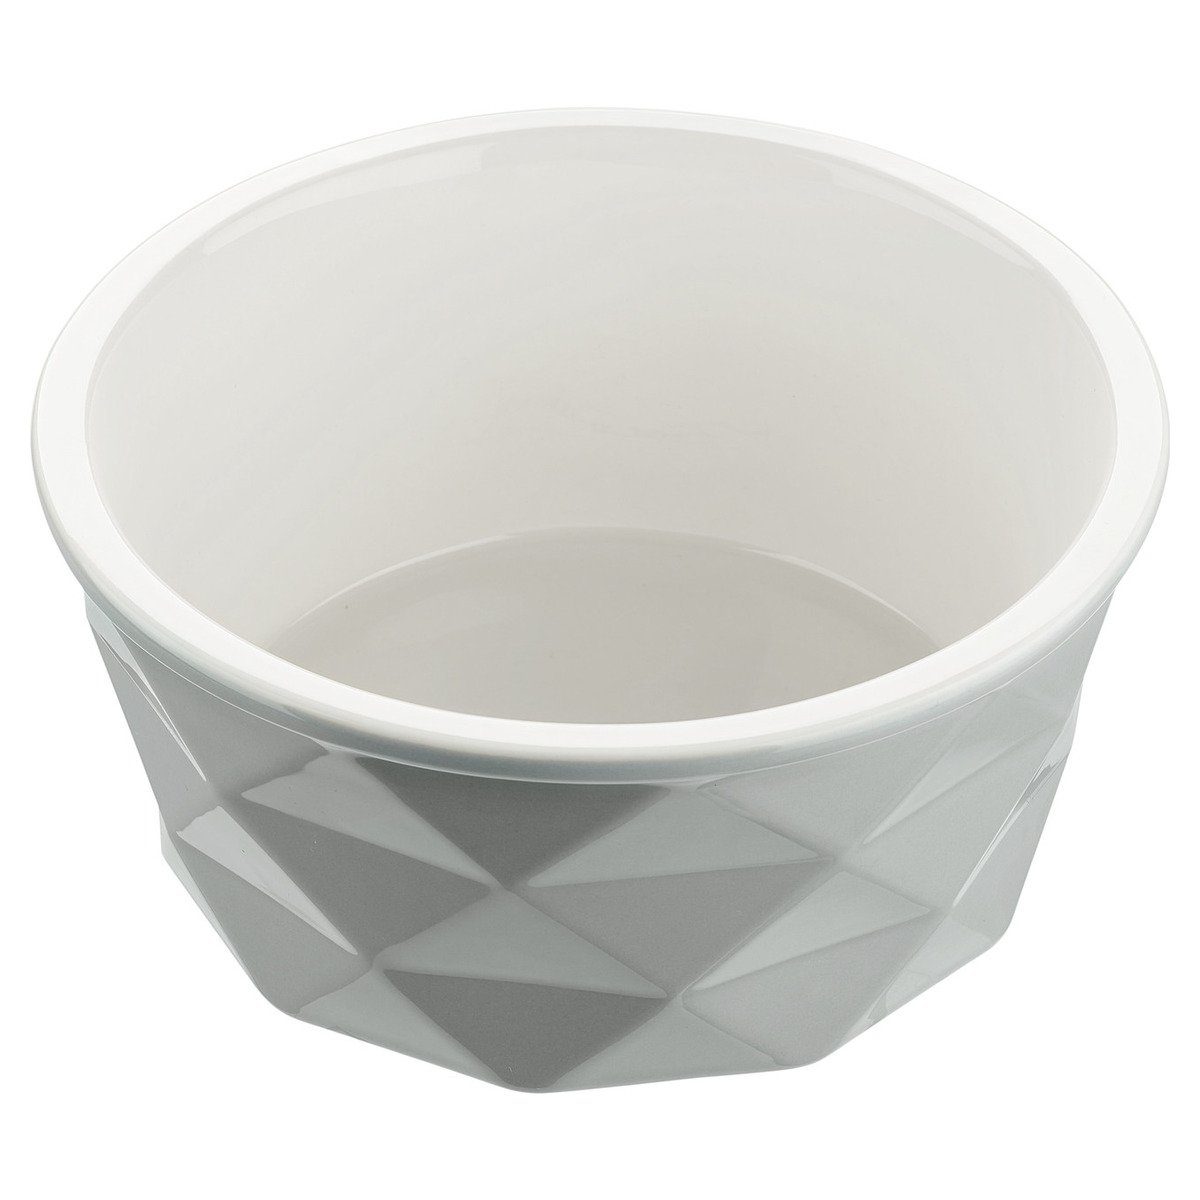 Hunter Tierbedarf Futterbehälter Keramik-Napf Eiby grau, Fassungsvermögen: 350 ml / Durchmesser: 11 cm